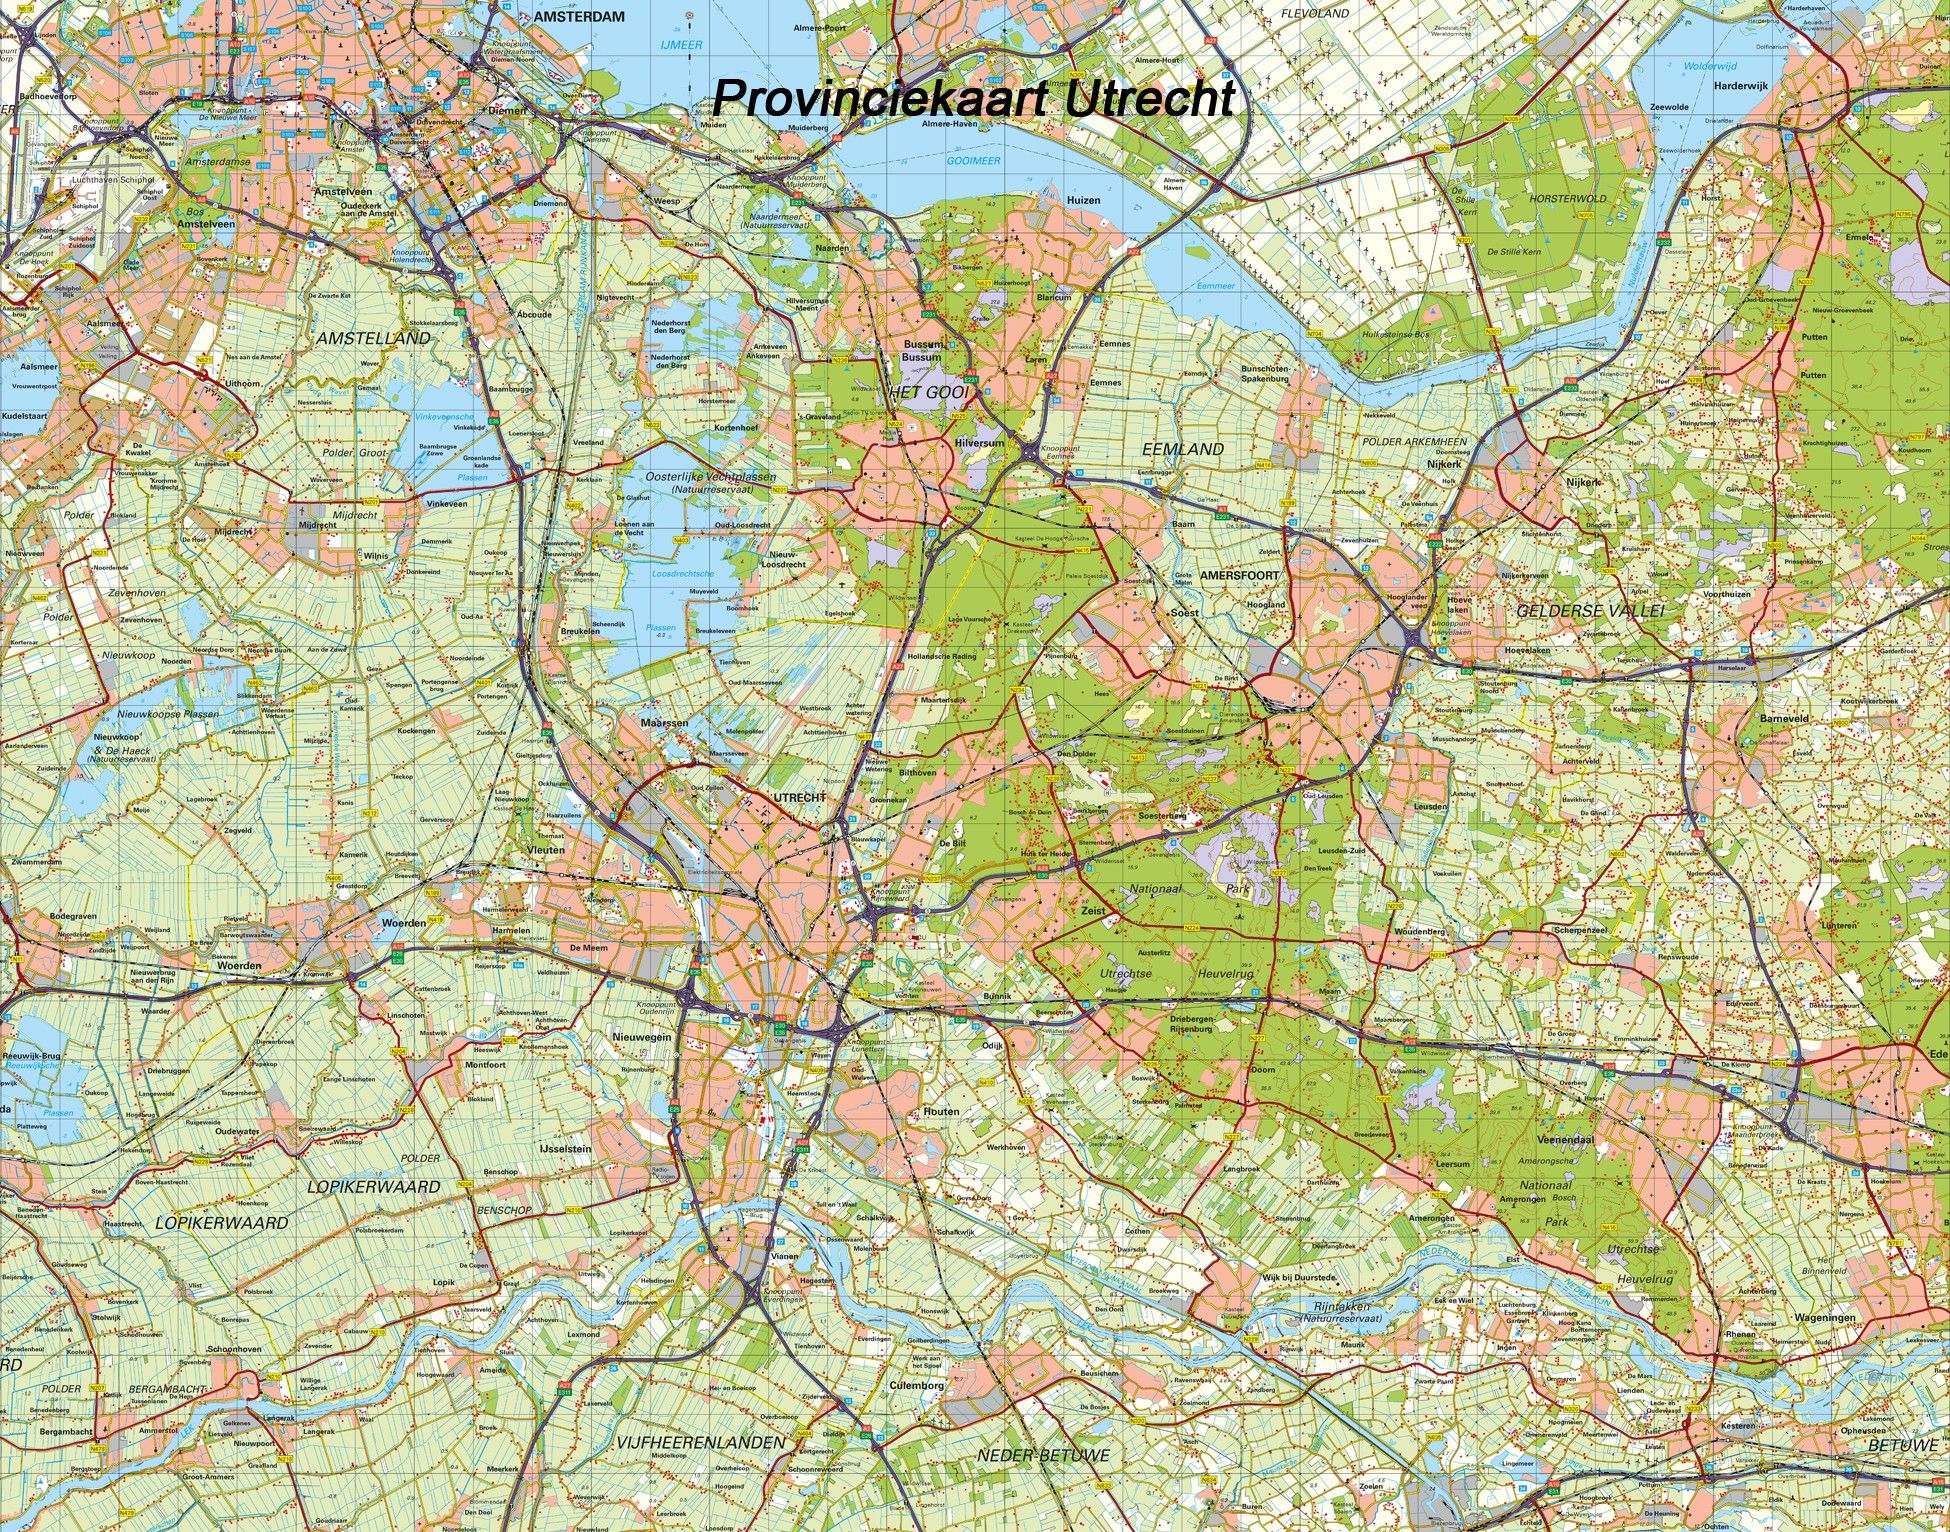 Topografische Provincie kaart Utrecht 1:100.000